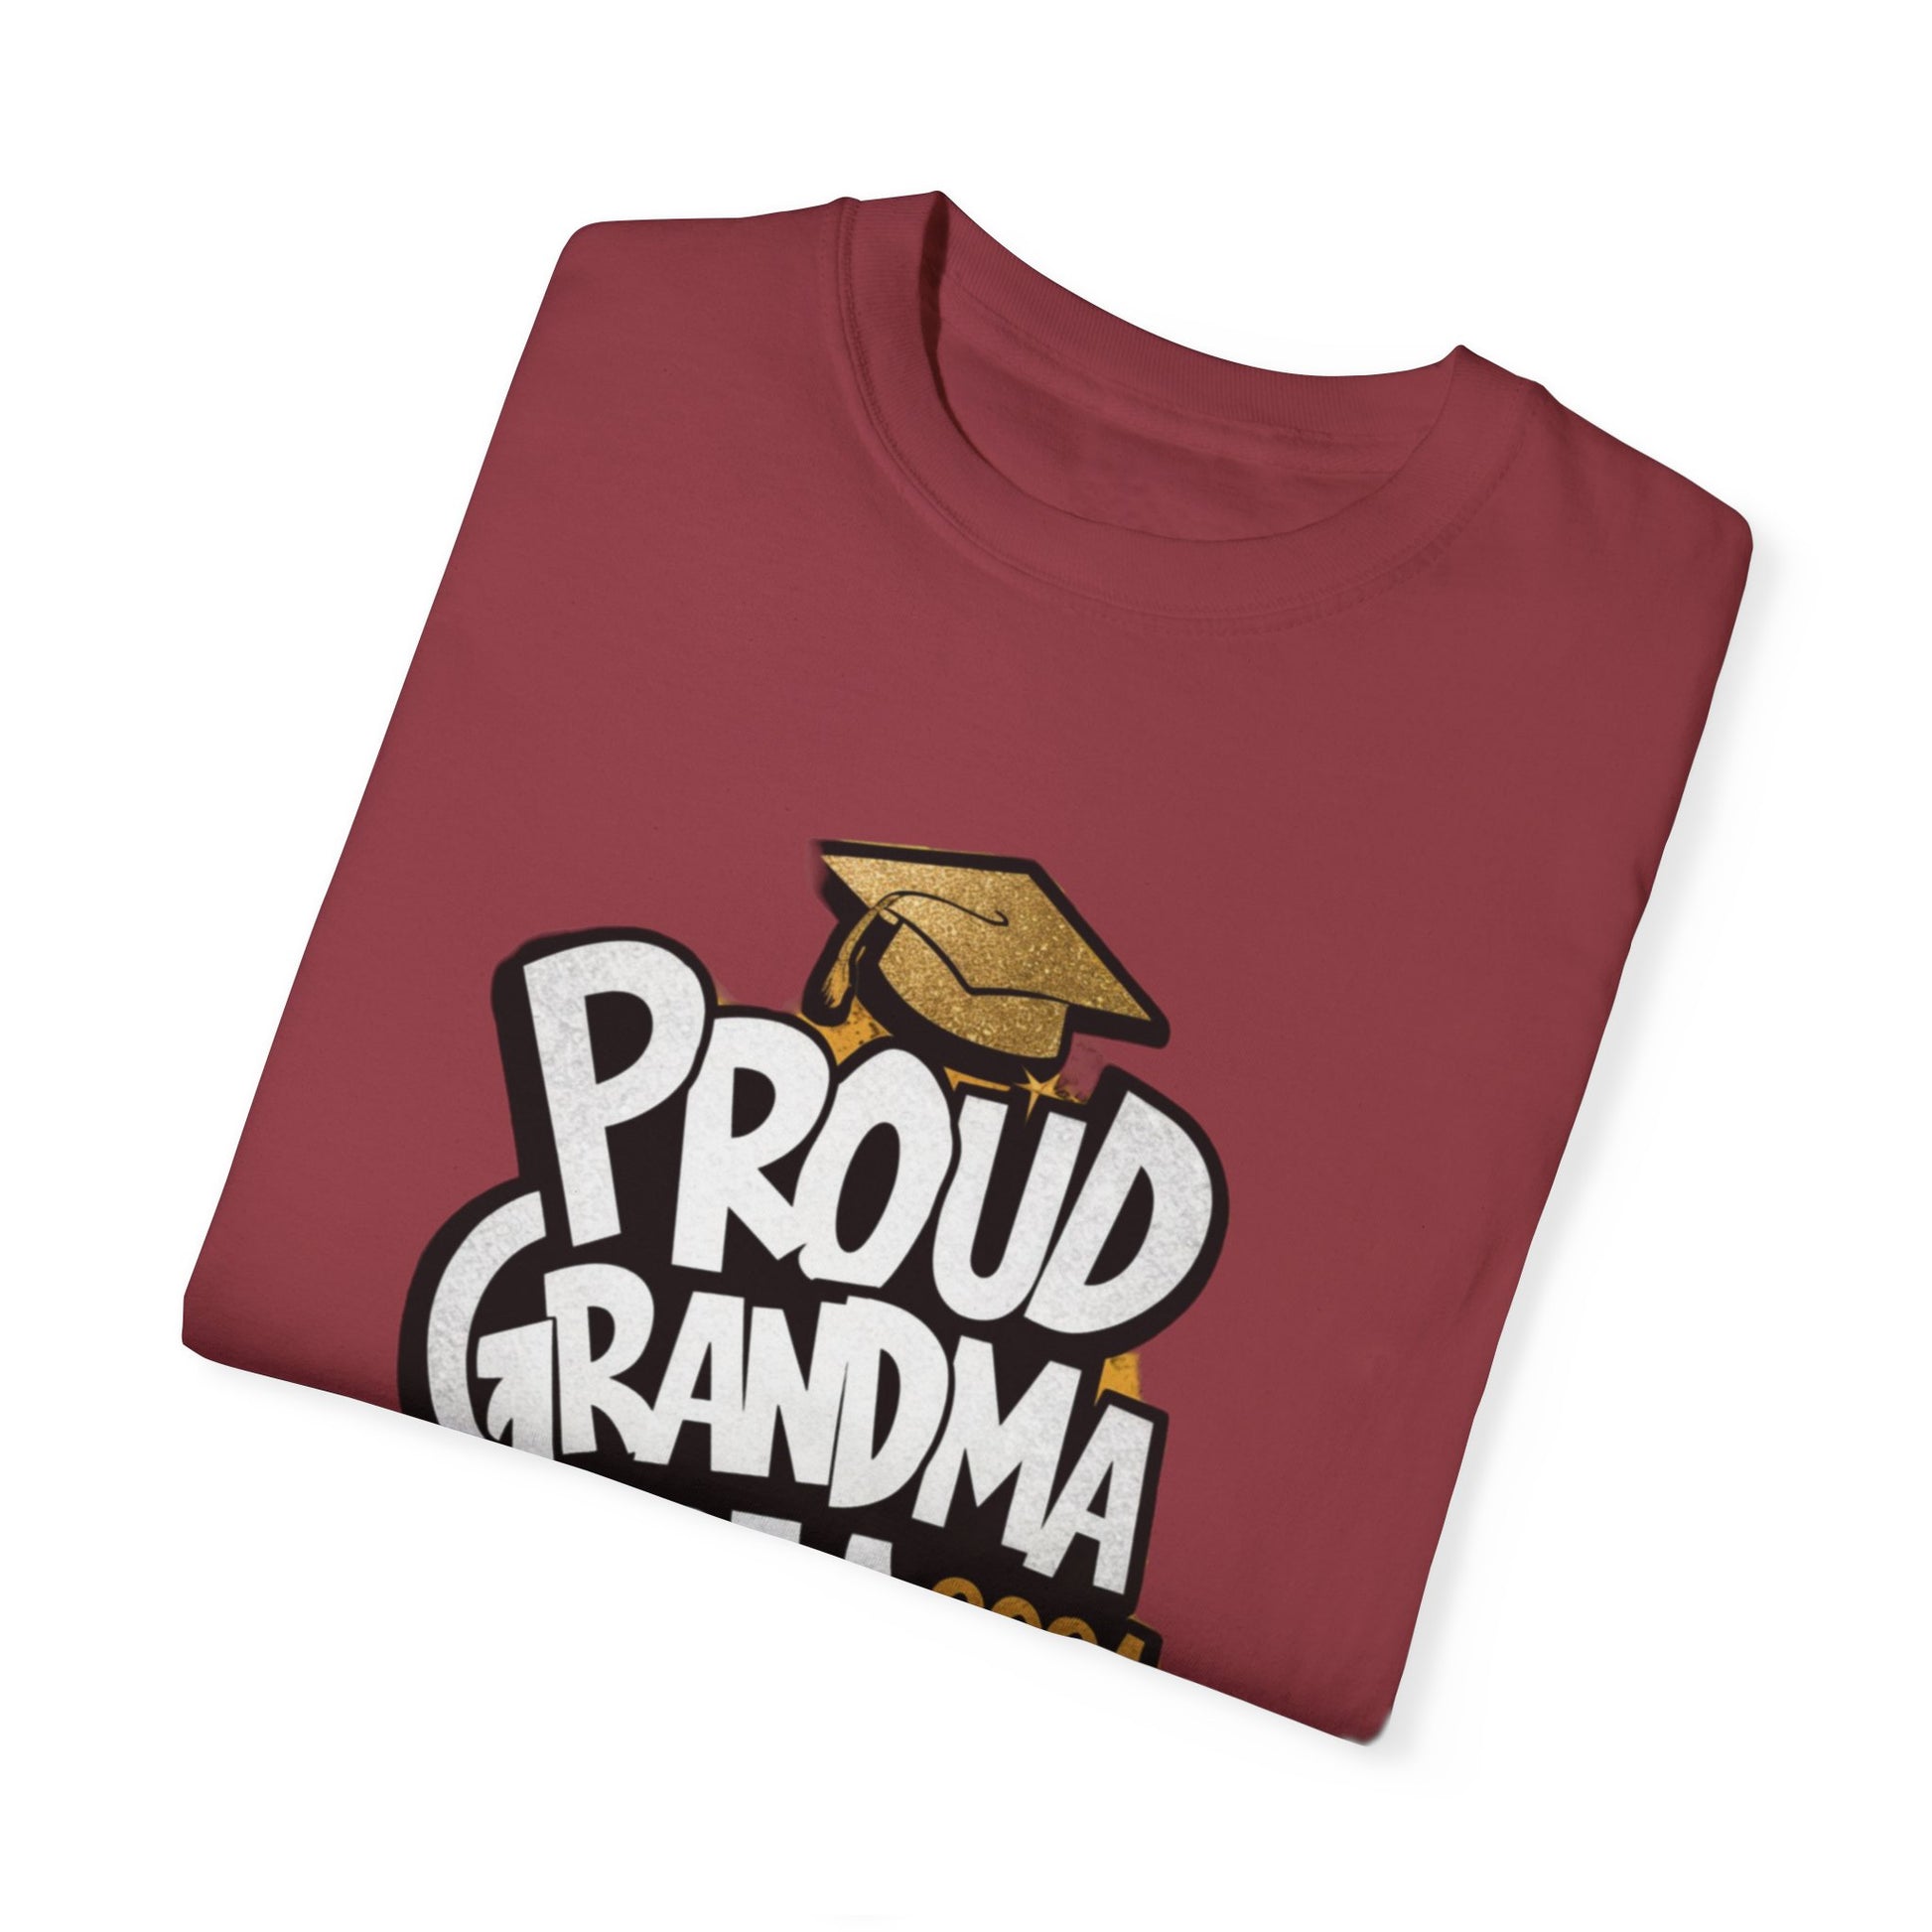 Proud of Grandma 2024 Graduate Unisex Garment-dyed T-shirt Cotton Funny Humorous Graphic Soft Premium Unisex Men Women Chili T-shirt Birthday Gift-35